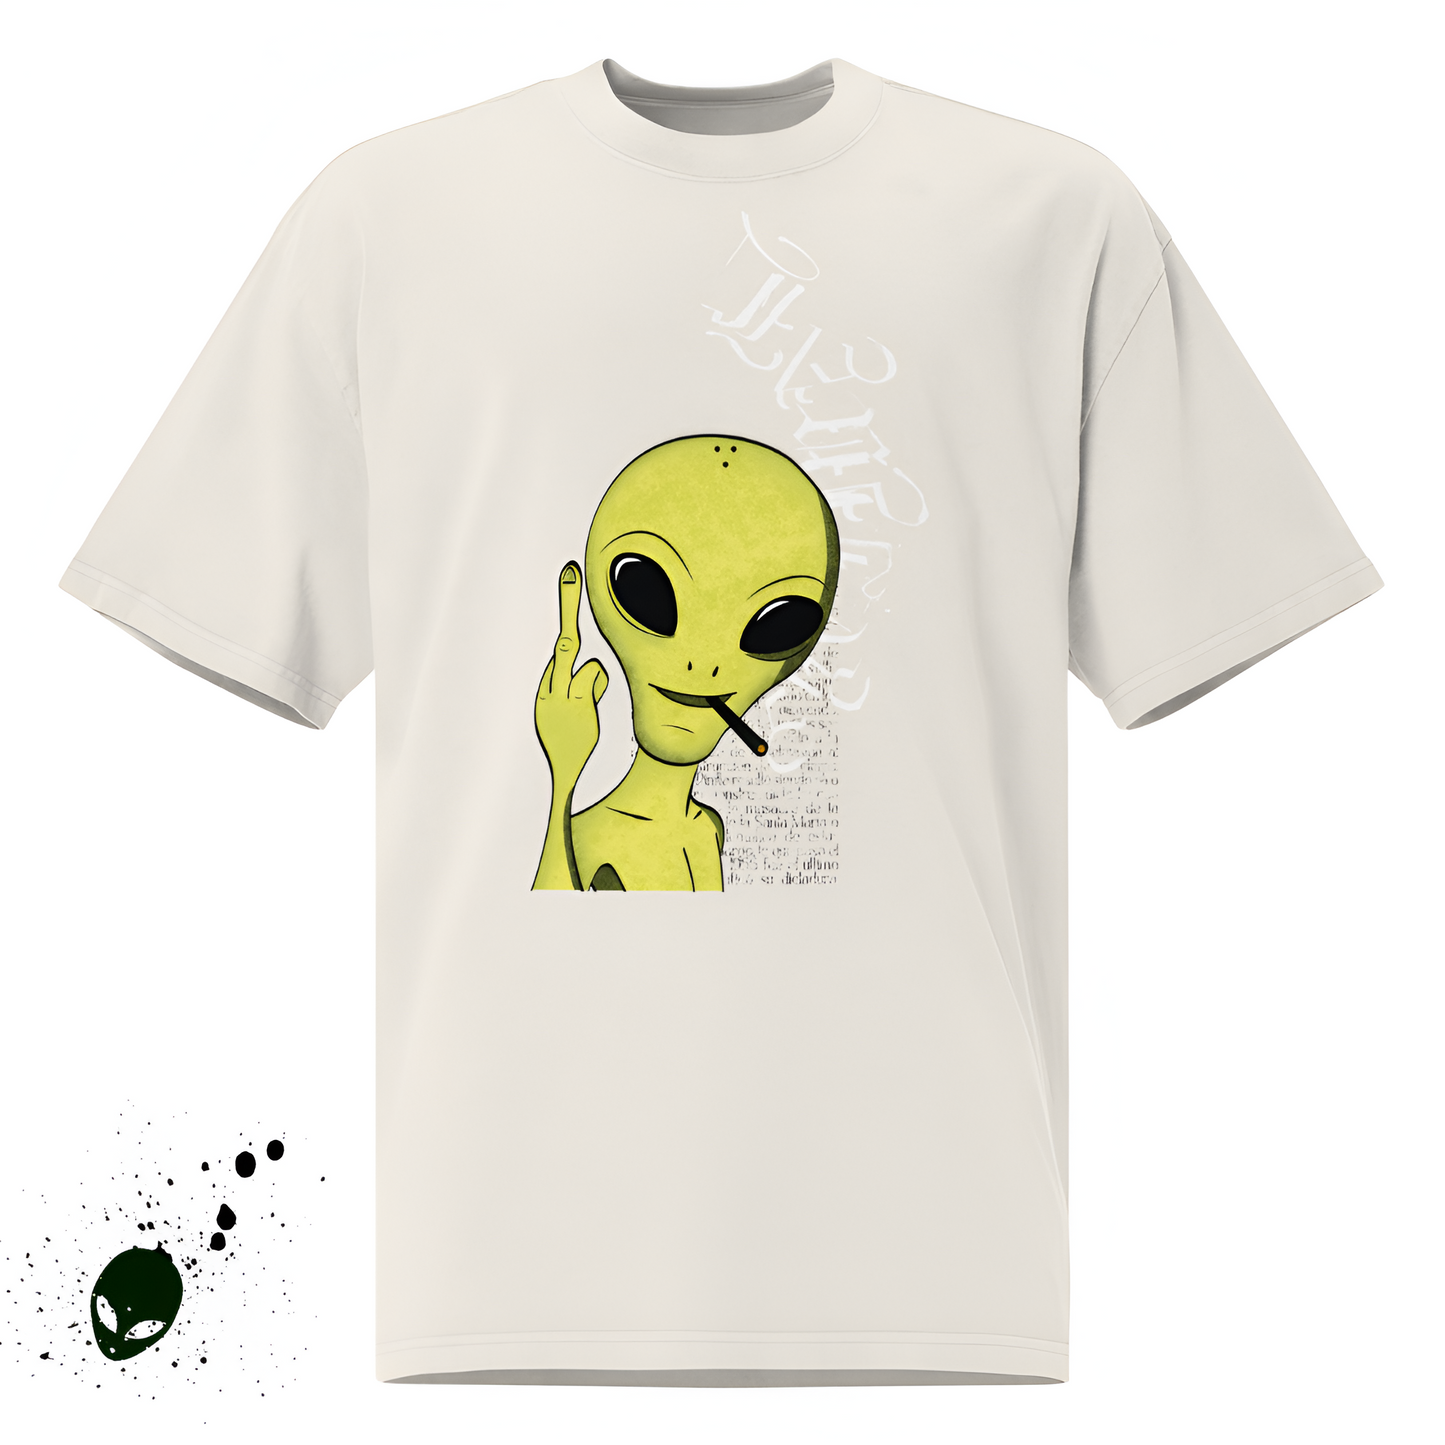 Oversaik Galactic T-shirt